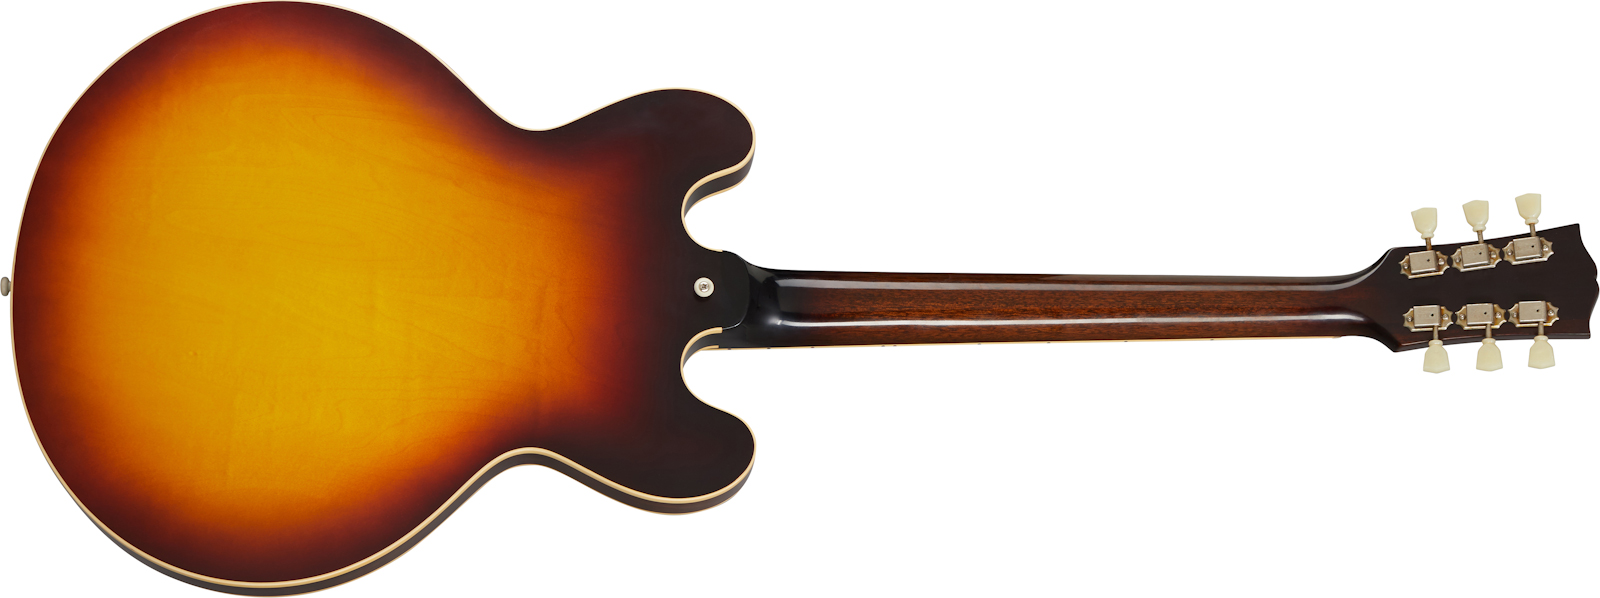 Gibson Custom Shop Historic Es-335 1959 Reissue 2019 2h Ht Rw - Vos Vintage Sunburst - Semi hollow elektriche gitaar - Variation 1